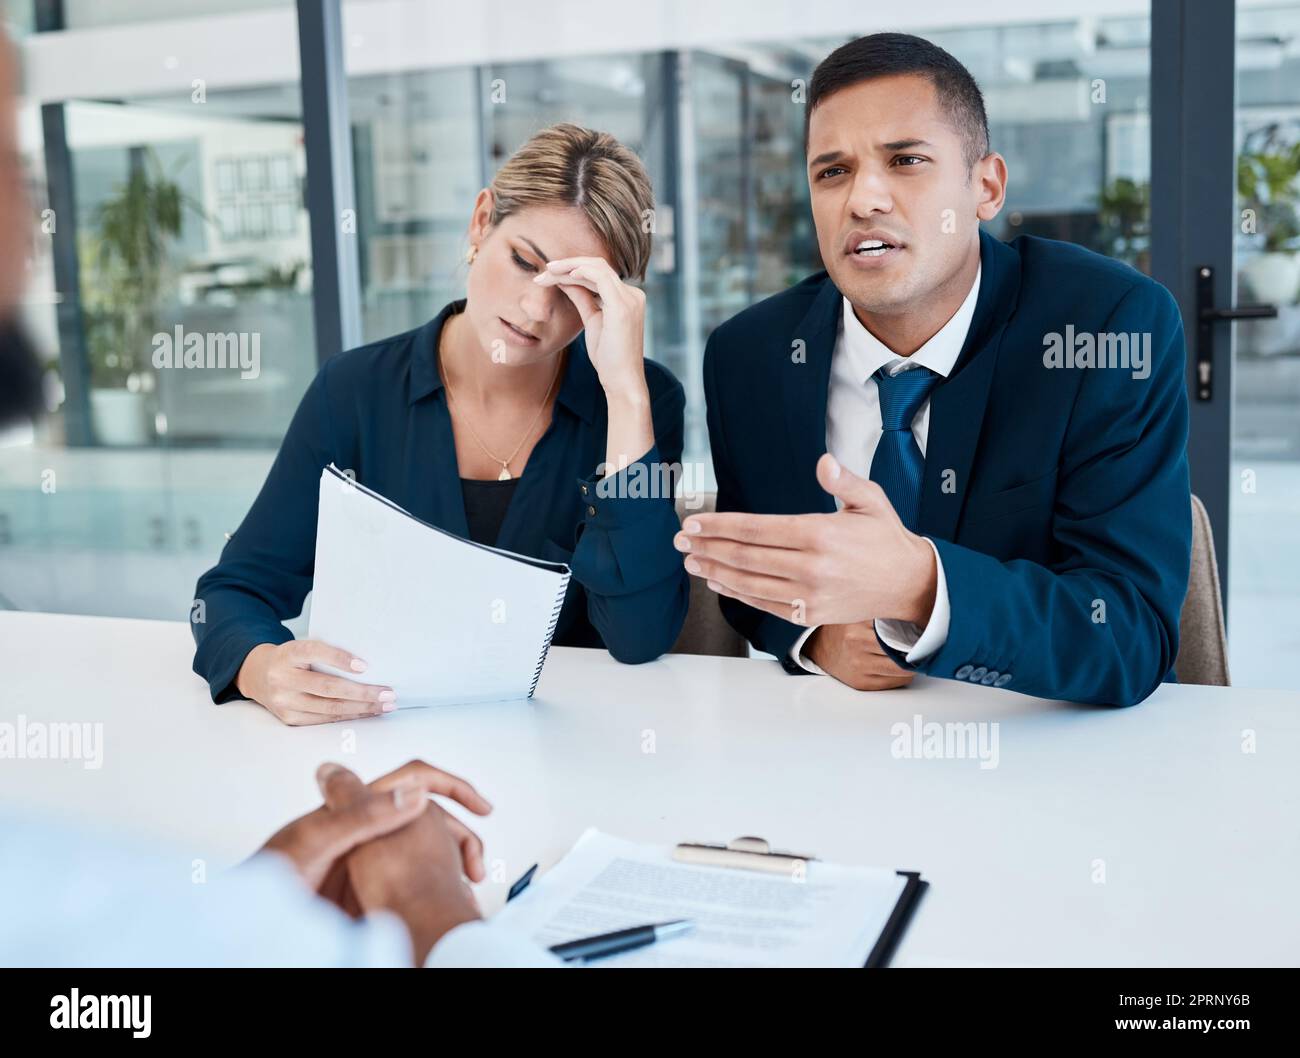 Ein Anwalt, der in einem Büro spricht, während ein Kunde Stress hat, liest Dokumente, während er mit dem CEO oder Chef des Unternehmens, Rechtsexperte, spricht. Berater verhandelt einen Vertrag für eine Frau an ihrem Arbeitsplatz oder in einem Unternehmen Stockfoto